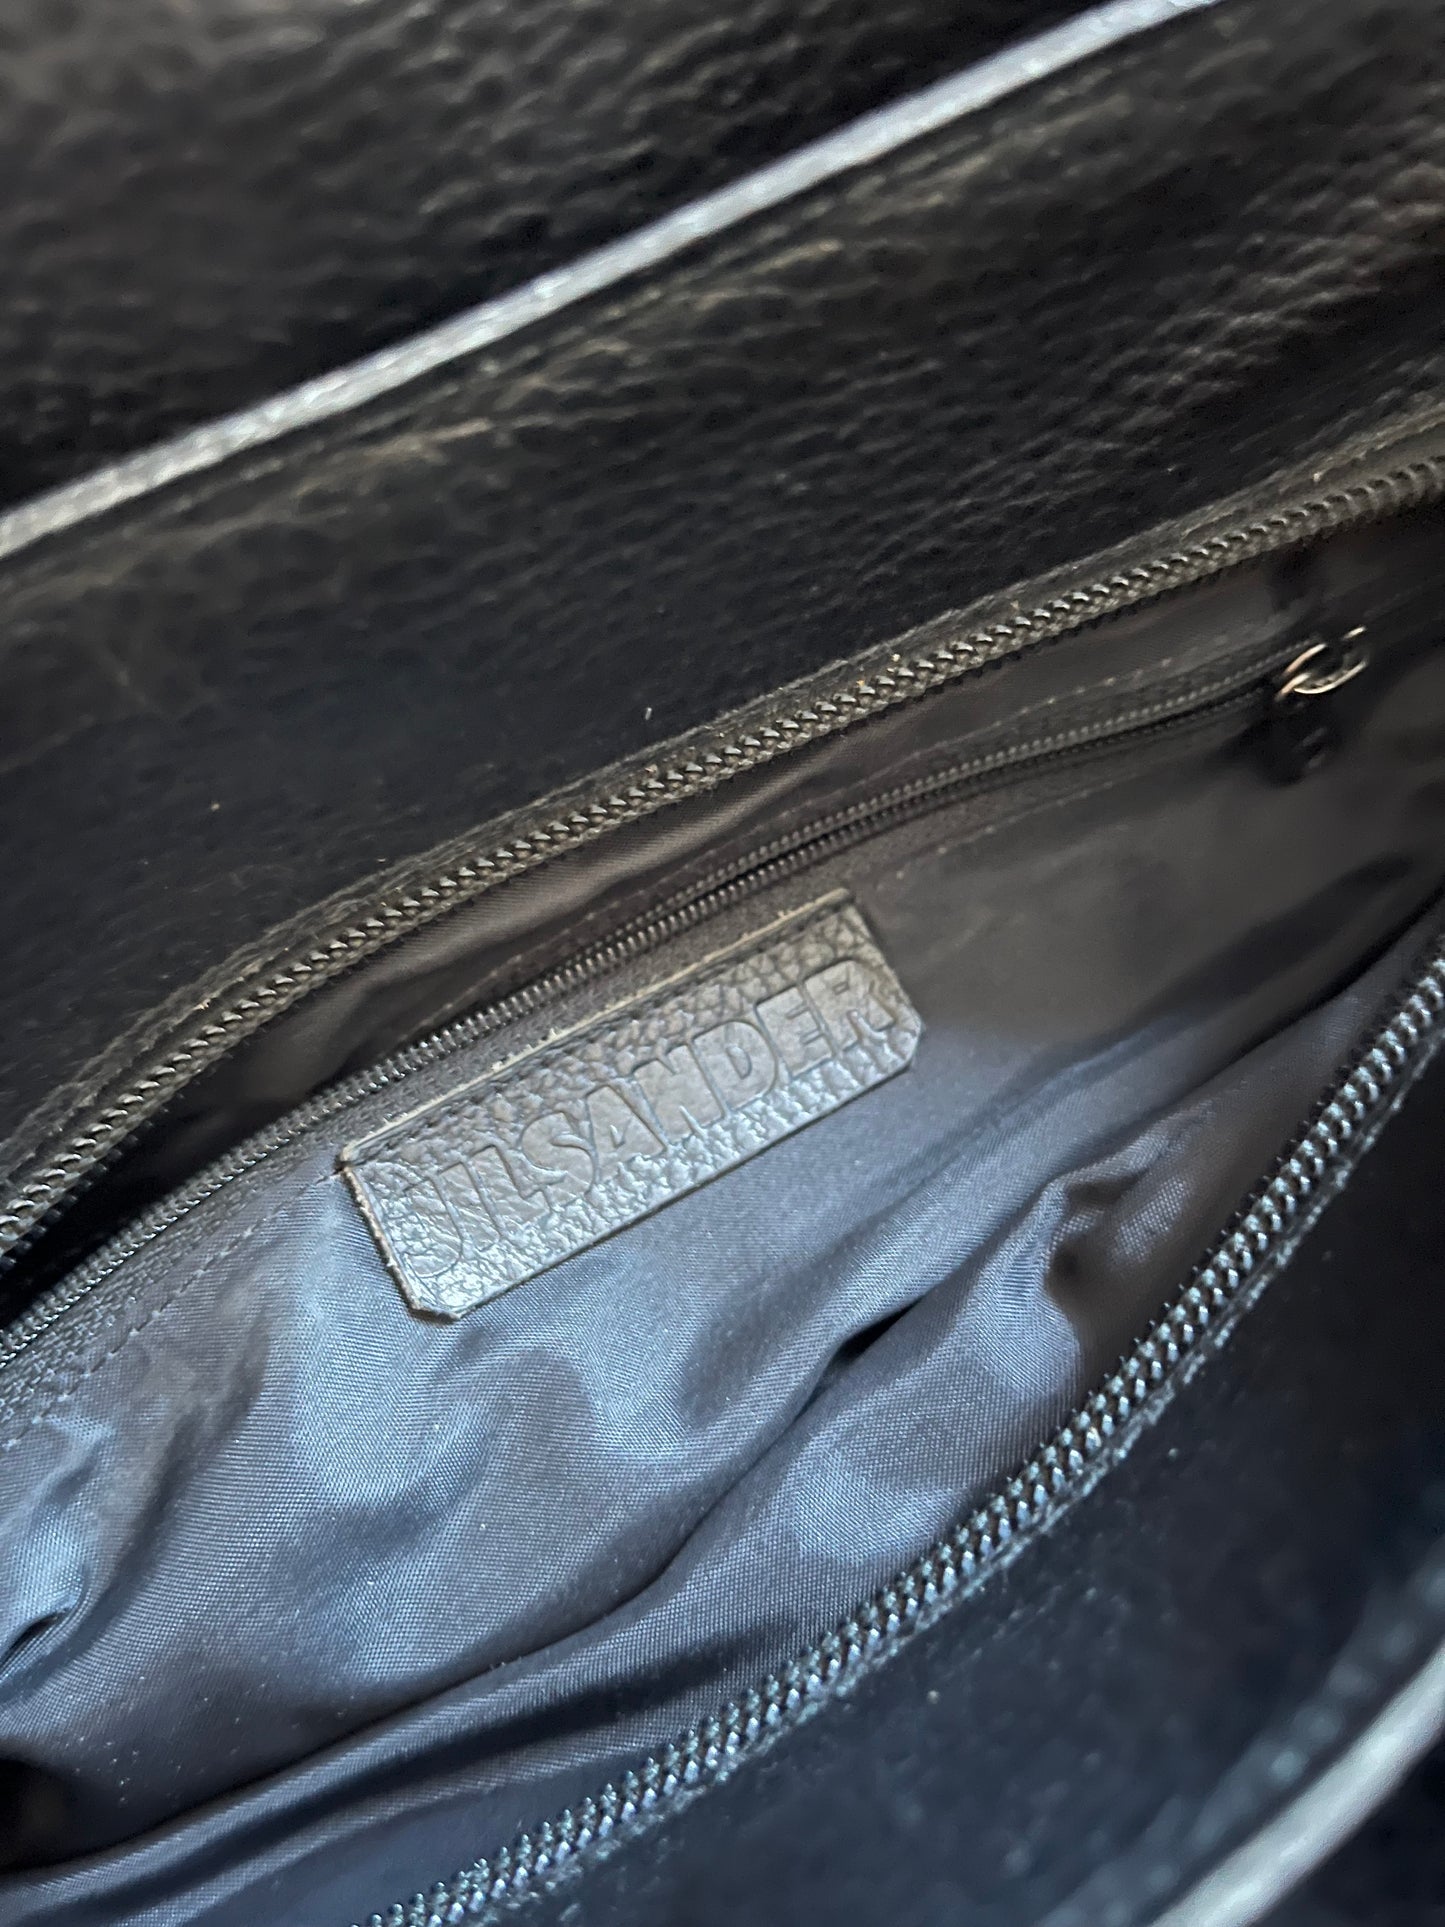 Jil Sander Triple Compartment Leather Shoulder Bag